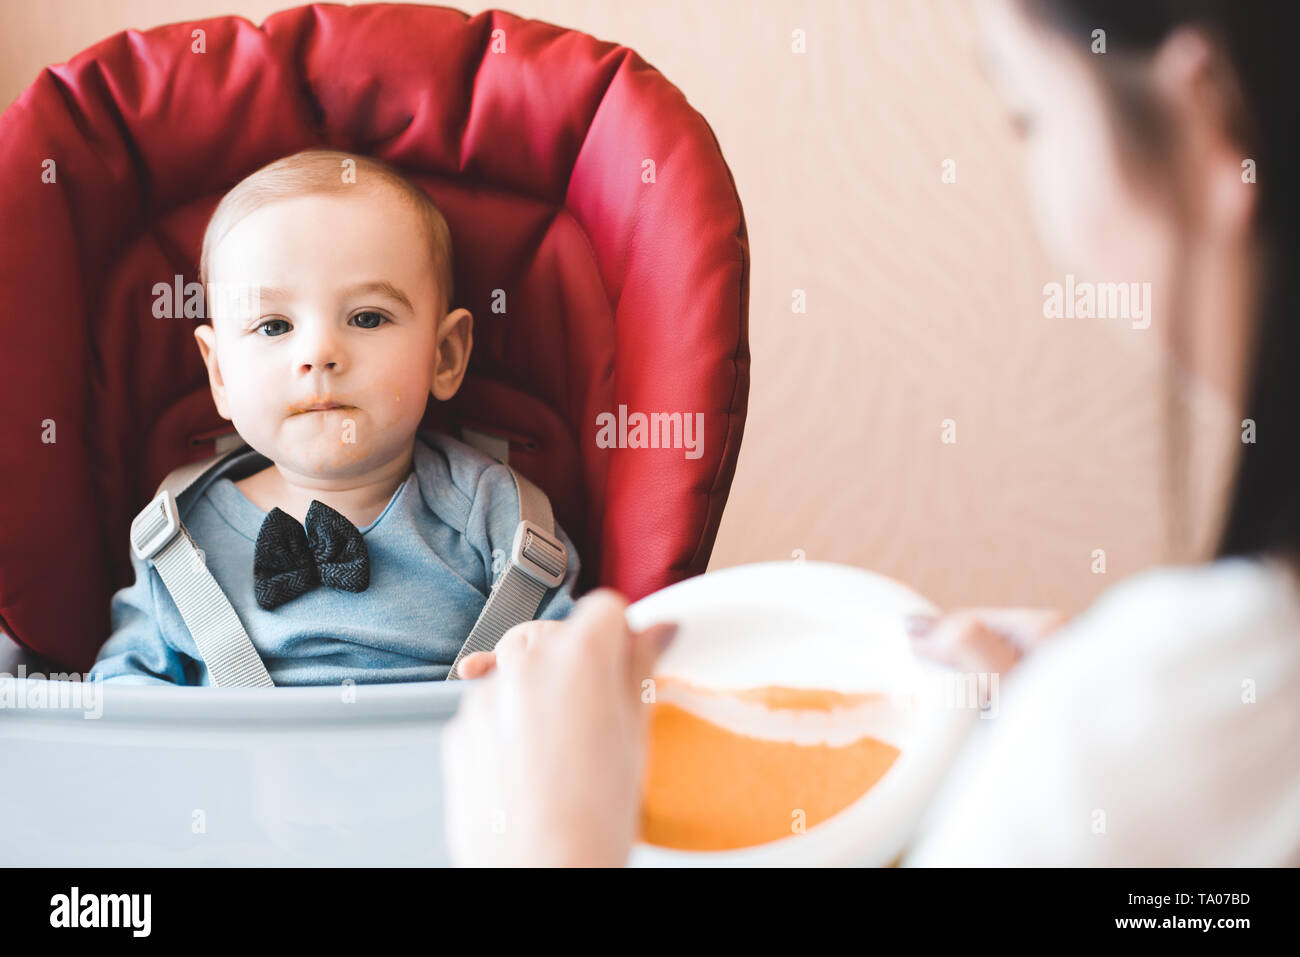 Alimentazione madre bambino seduto nella sedia in cucina. Guardando alla fotocamera. La maternità. La maternità. Foto Stock